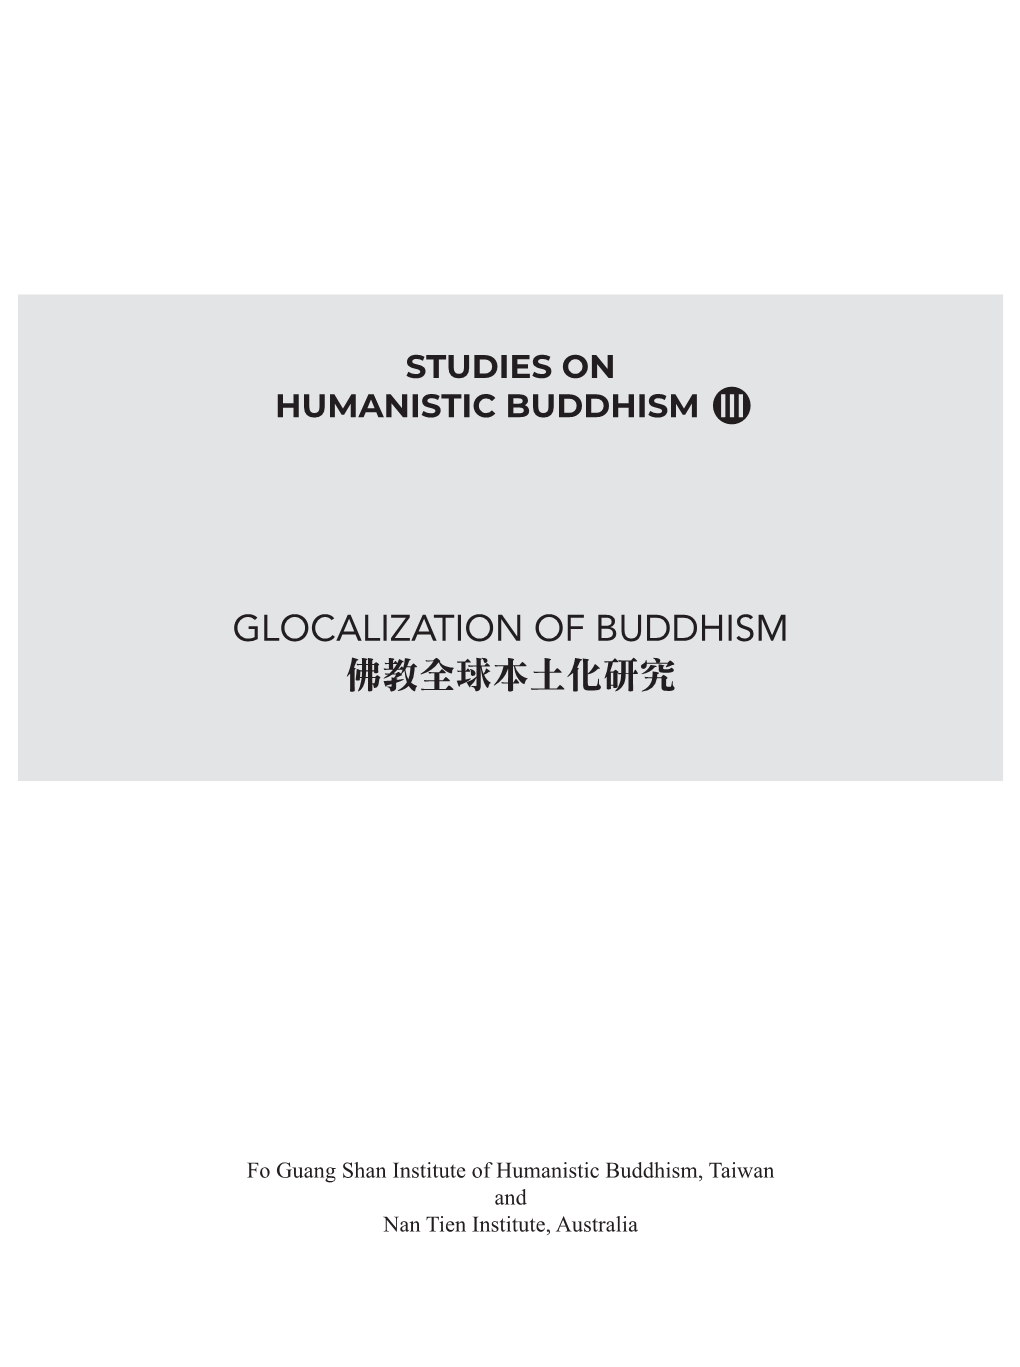 Glocalization of Buddhism 佛教全球本土化研究